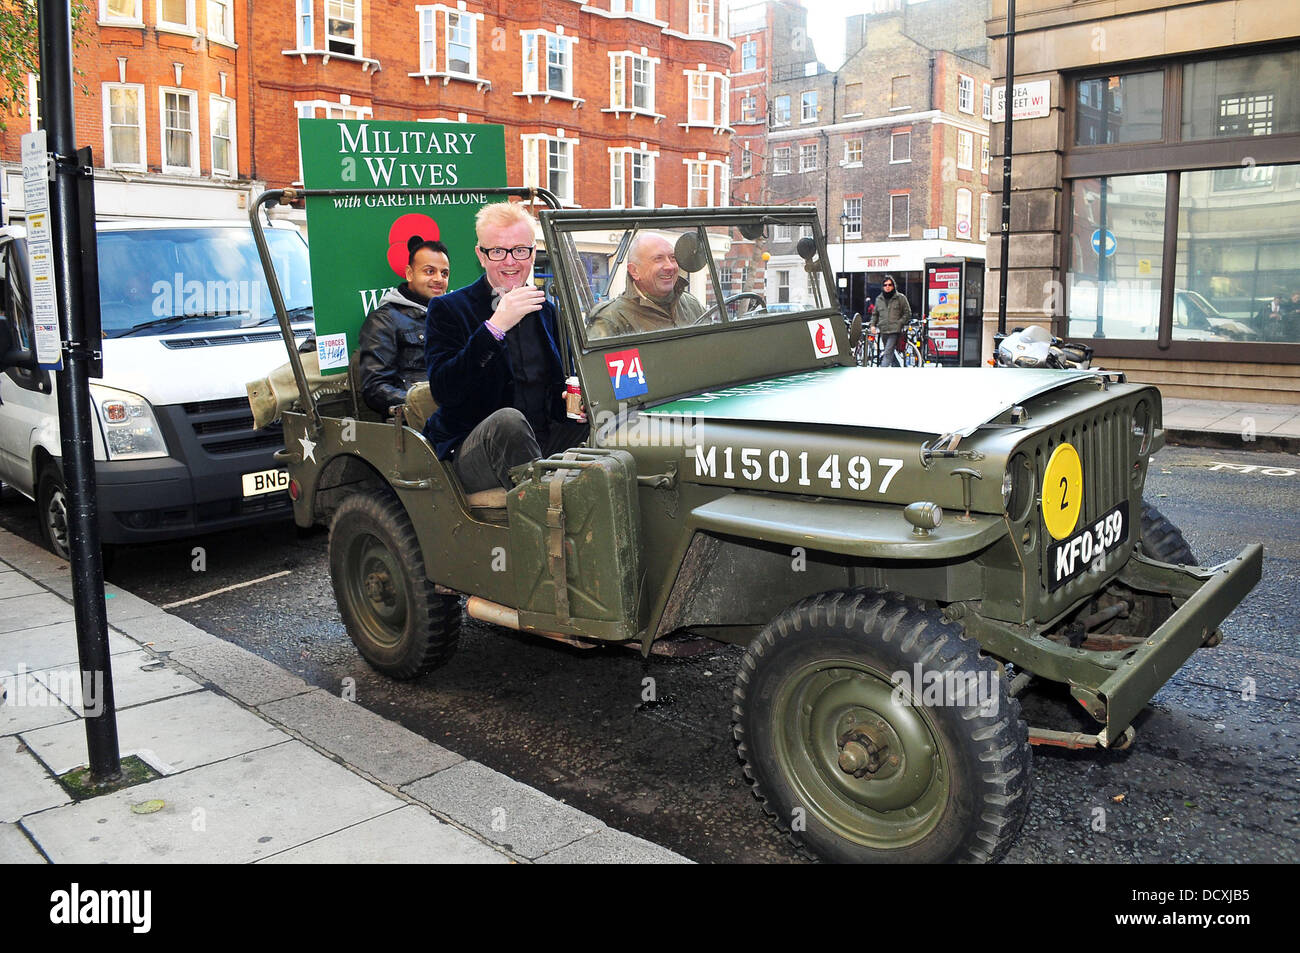 Chris Evans arriva in una Jeep Willys come egli lascia la BBC Radio 2  Studios di testa verso l'HMV store su Oxford Street. Il DJ è stato  contribuendo a promuovere i militari